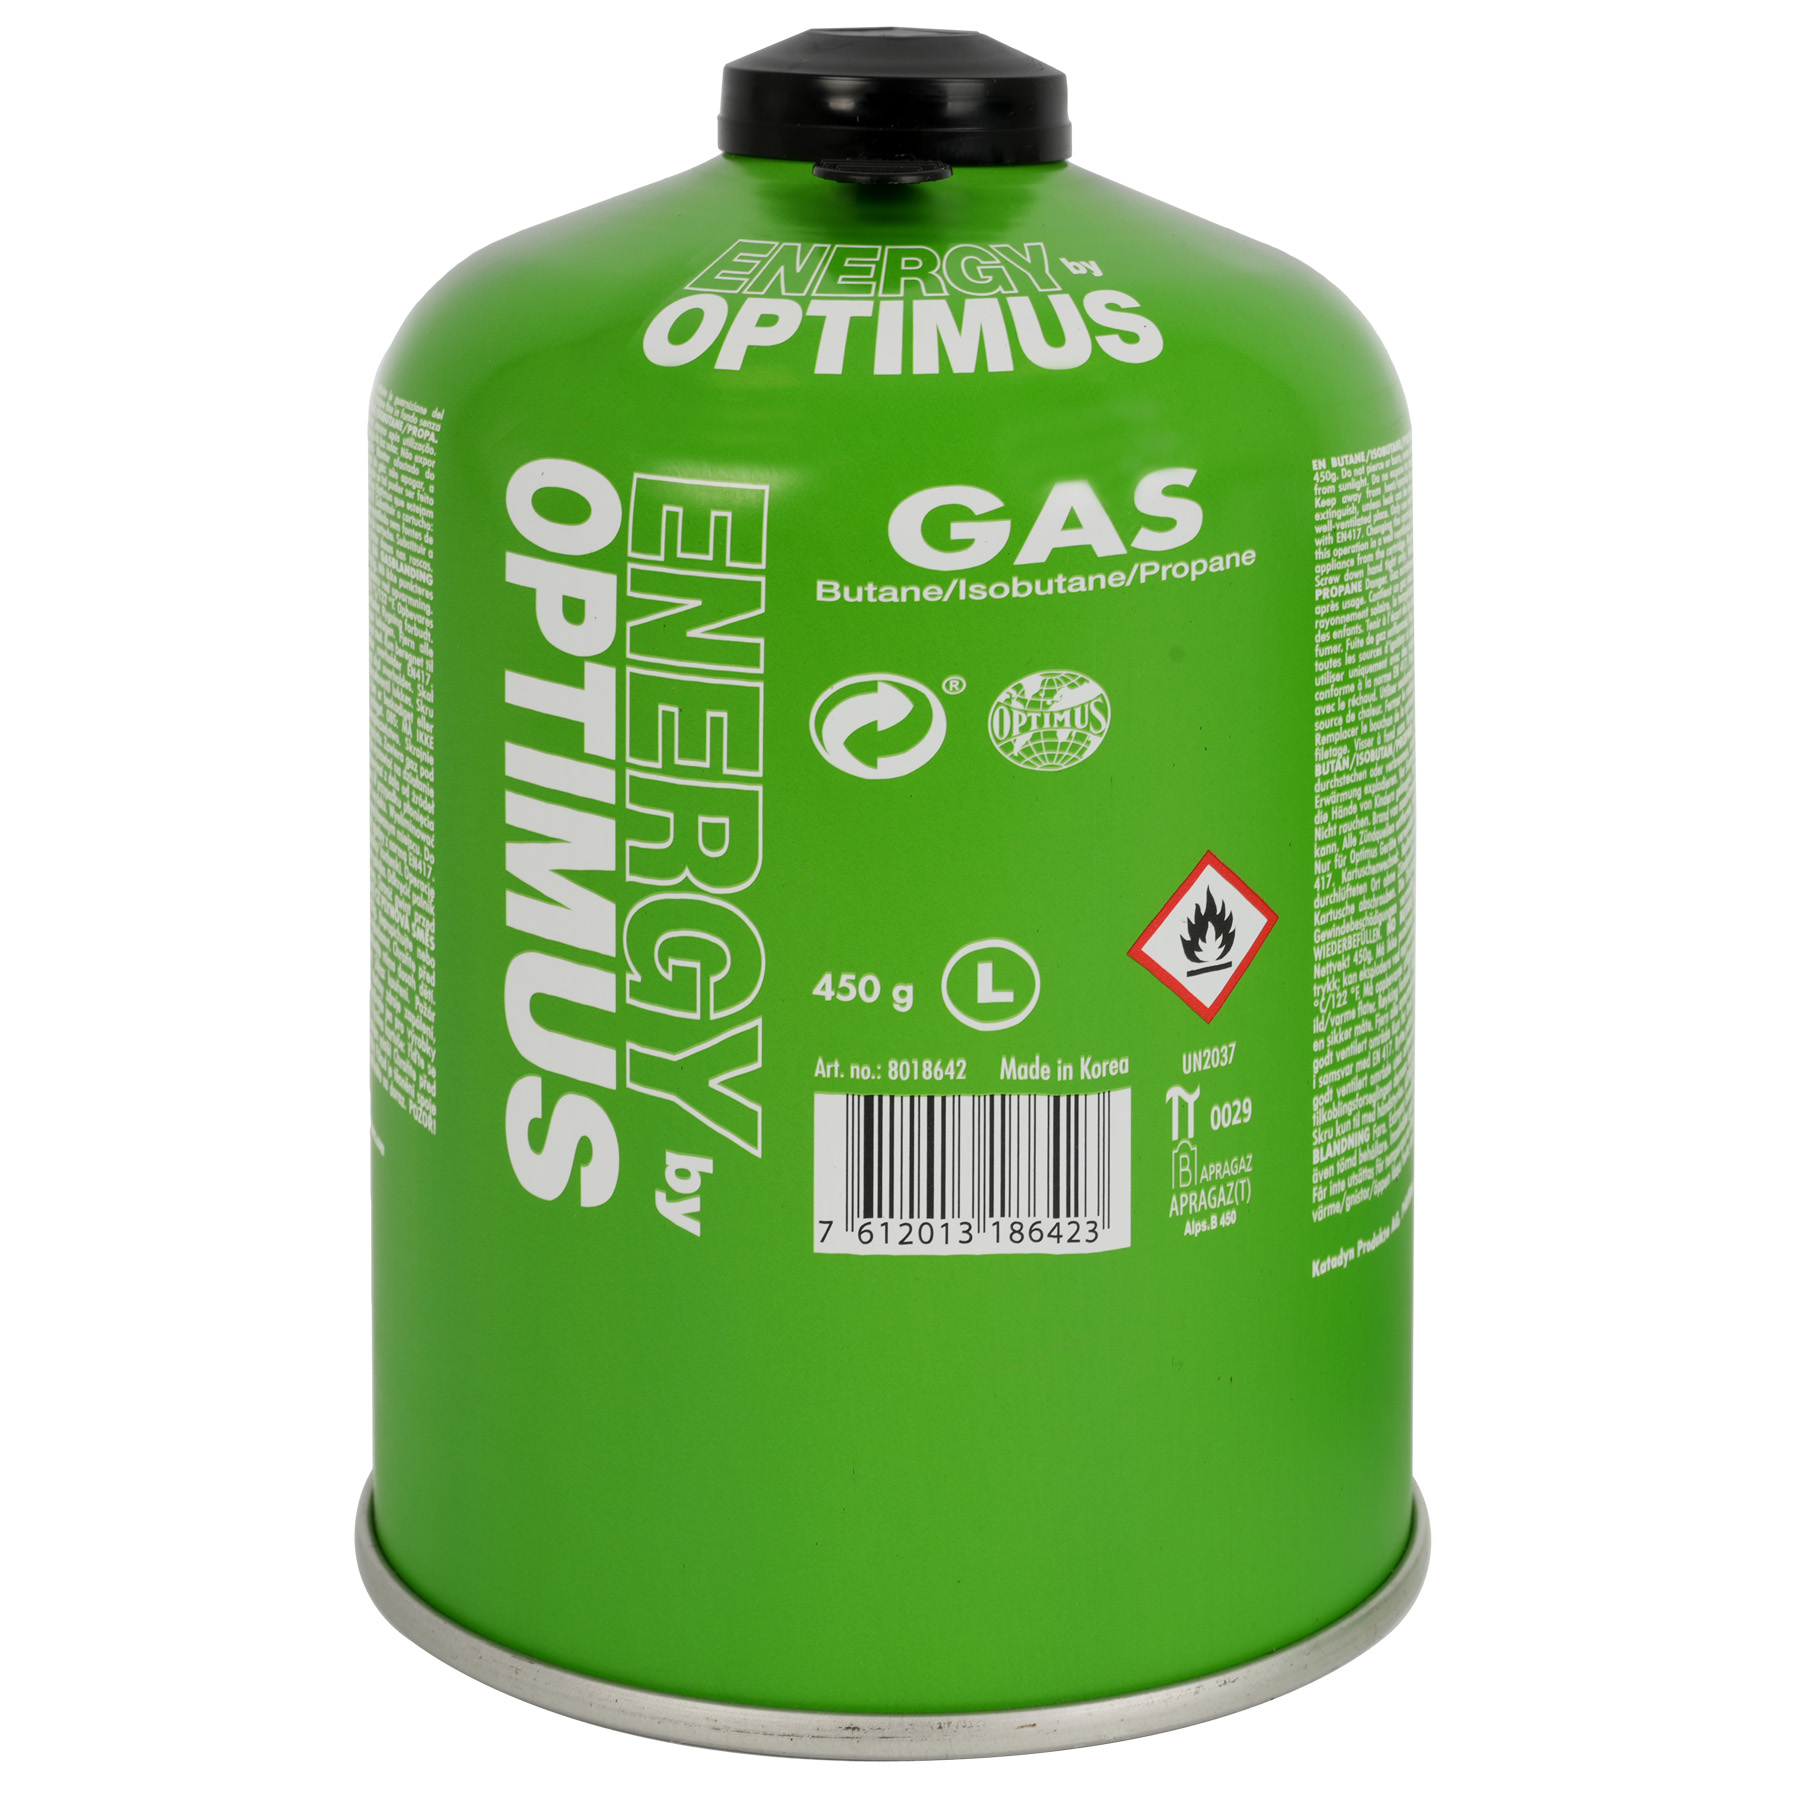 Bild von Optimus Universal Gaskartusche - 450g